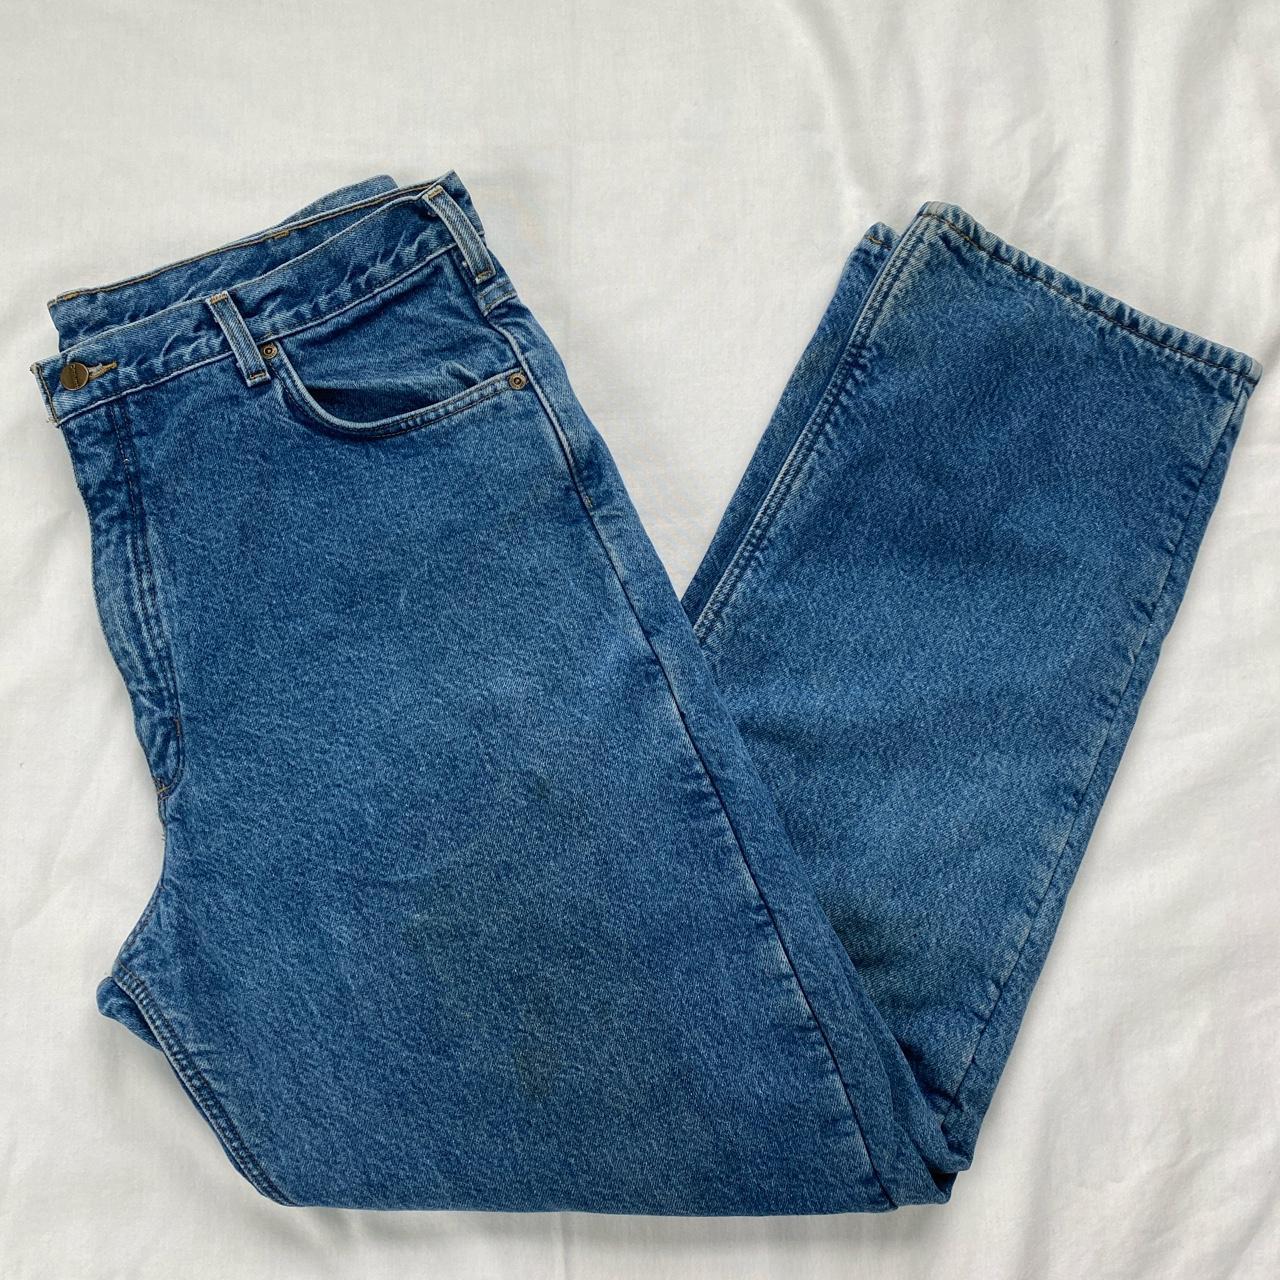 Carhartt Fleece-Lined Denim Jeans 40W x 34L Average... - Depop